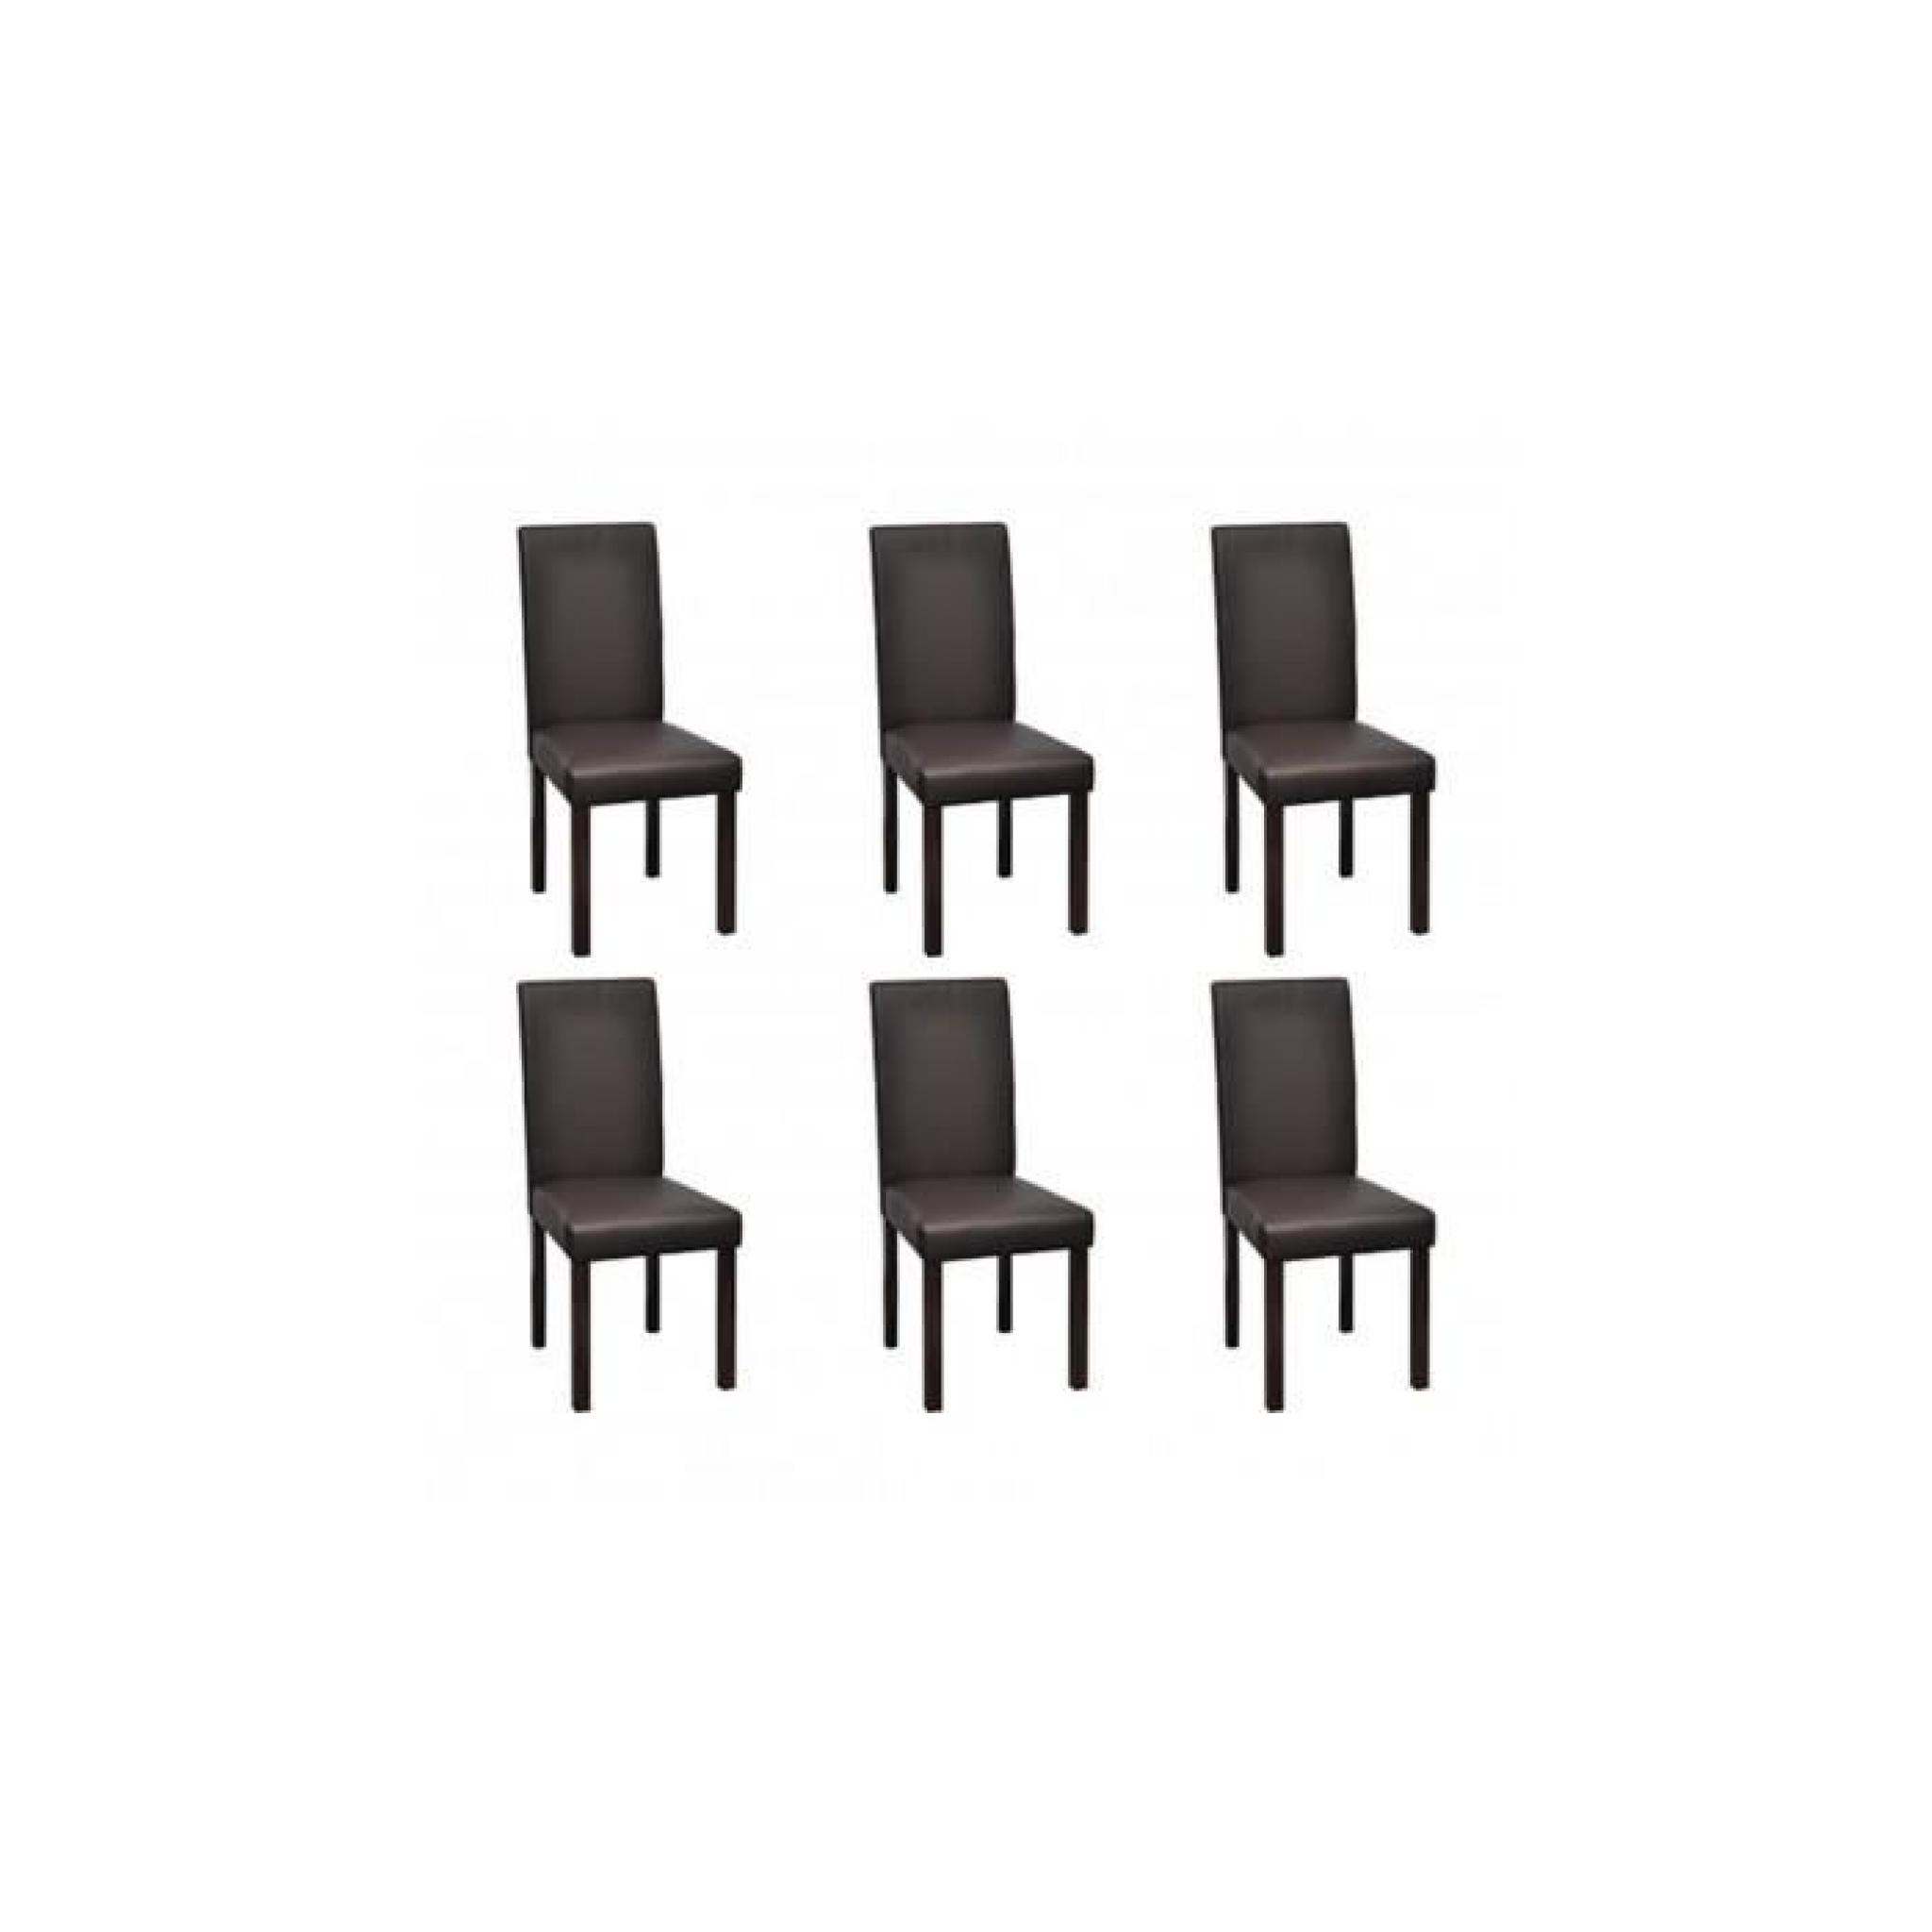 Chaise en cuir design colonial marron bois (lot de 6) Stylashop